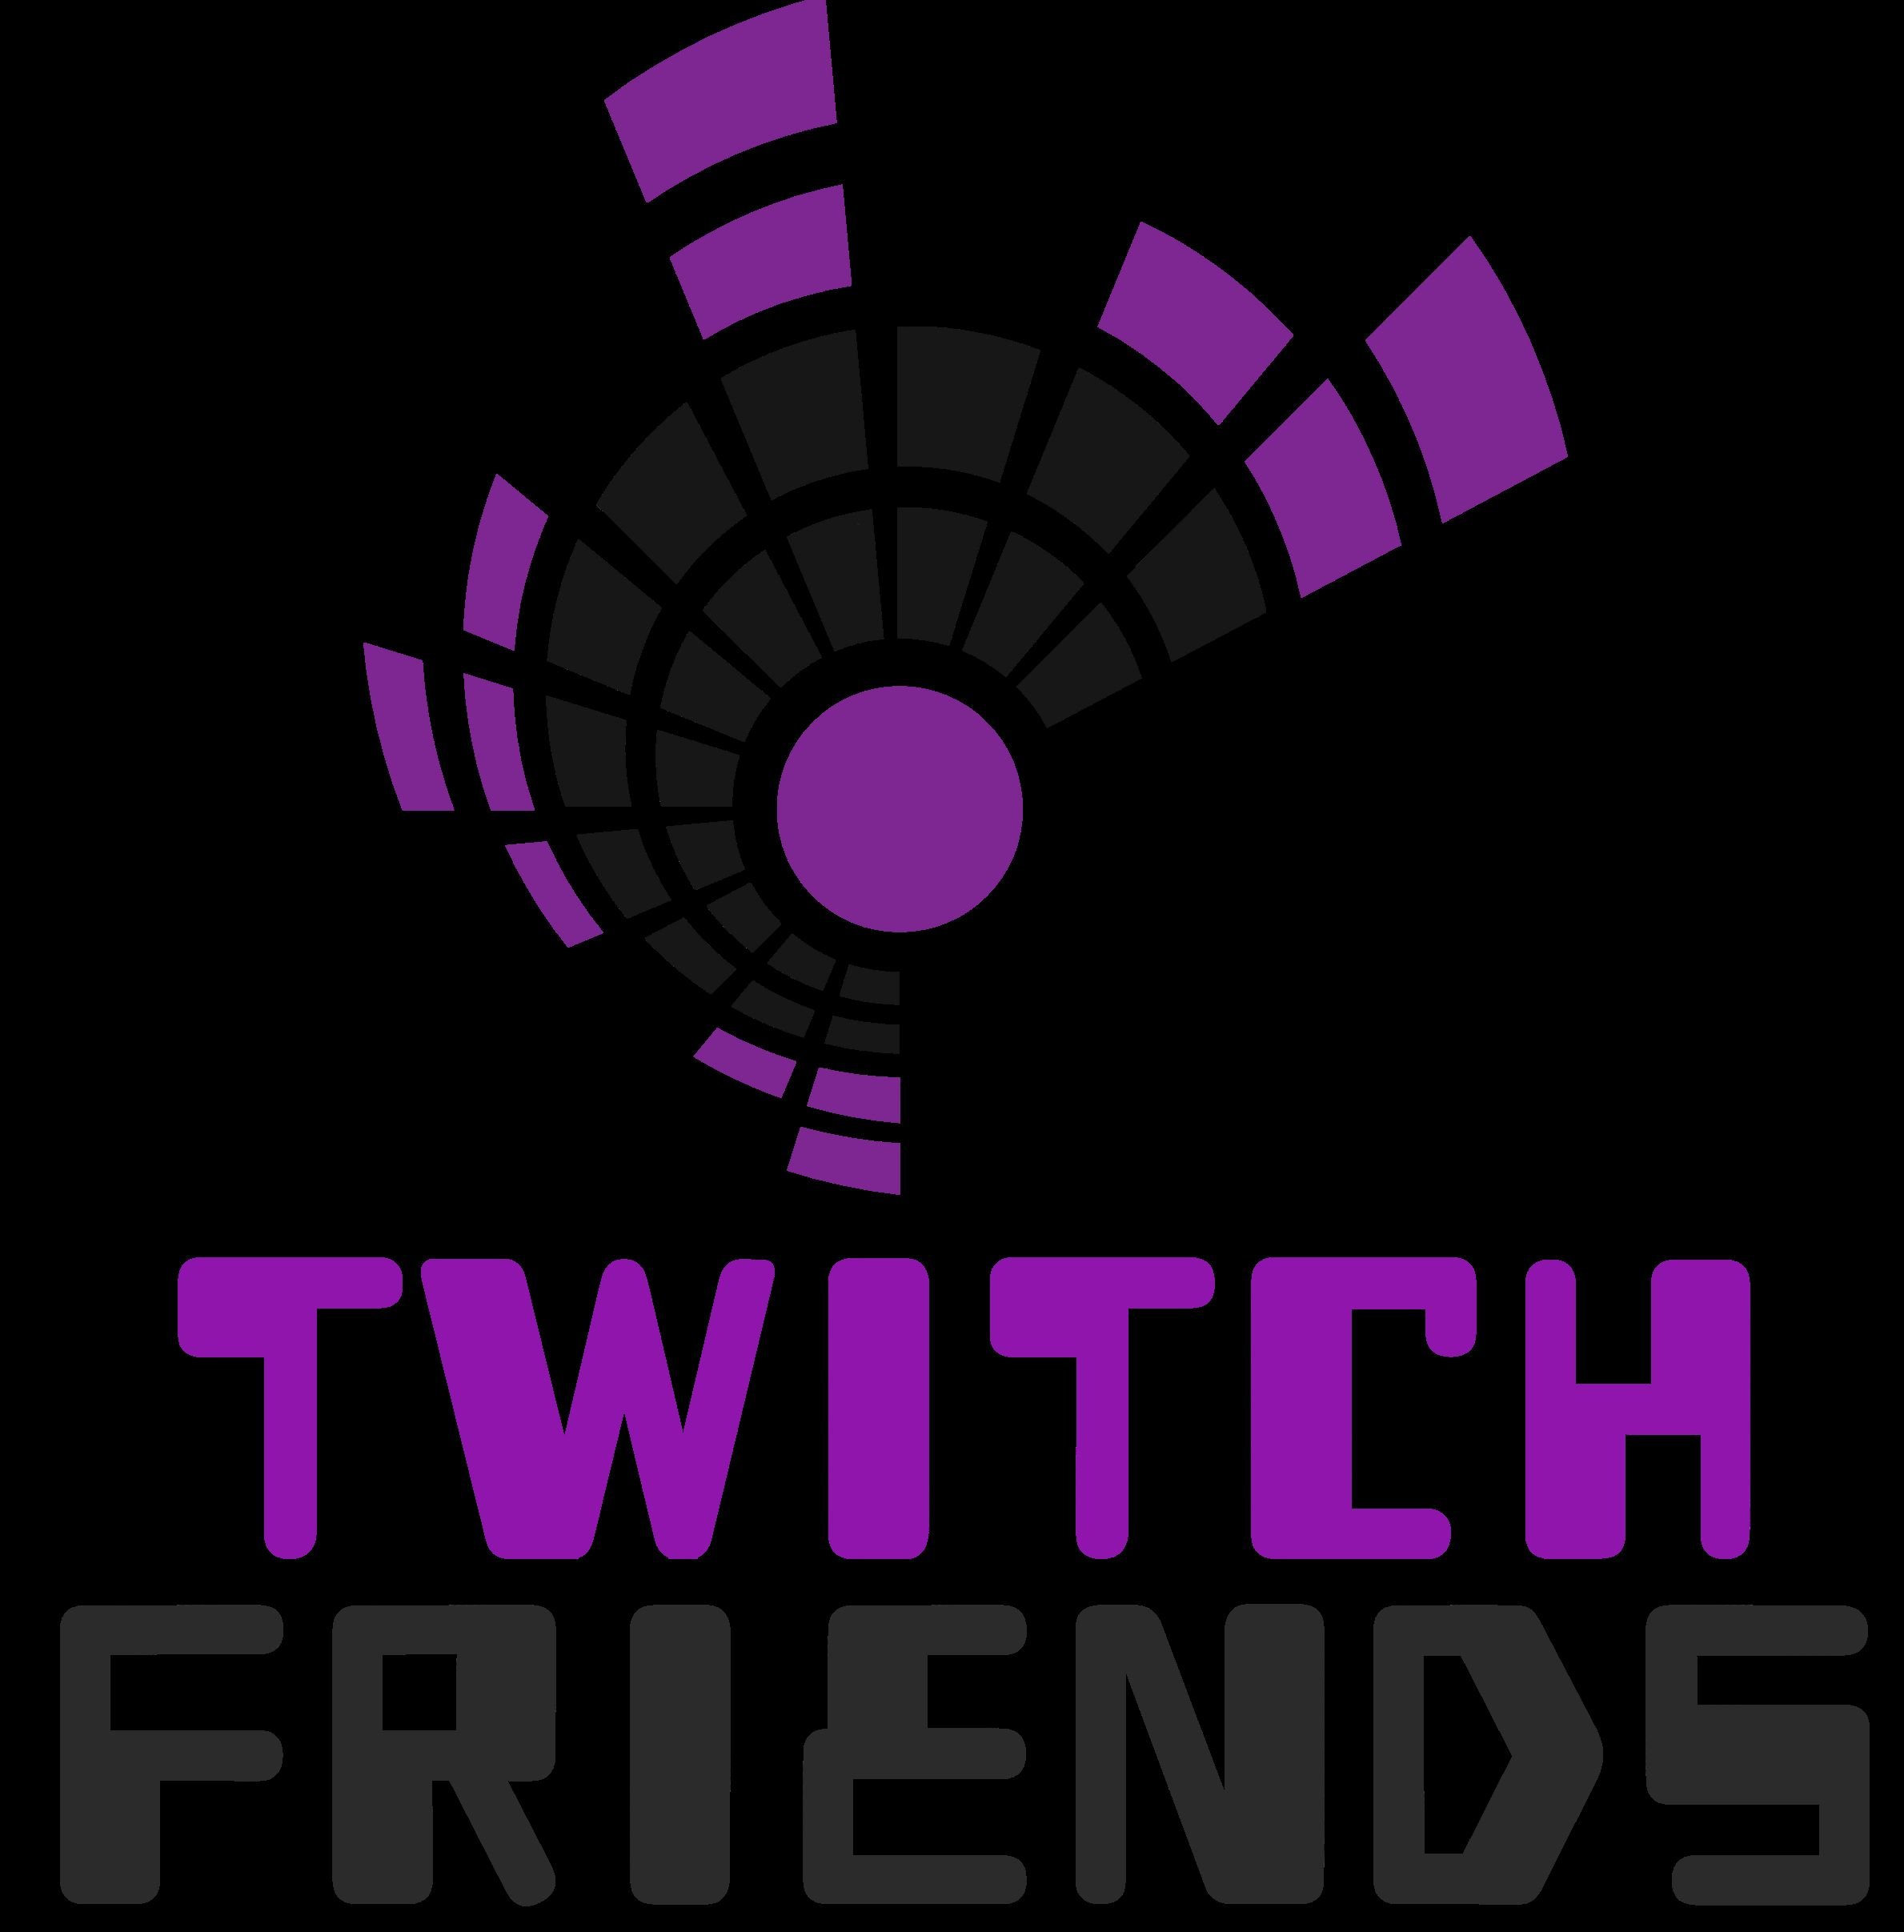 Twitch Friends Raidtrain Day 2